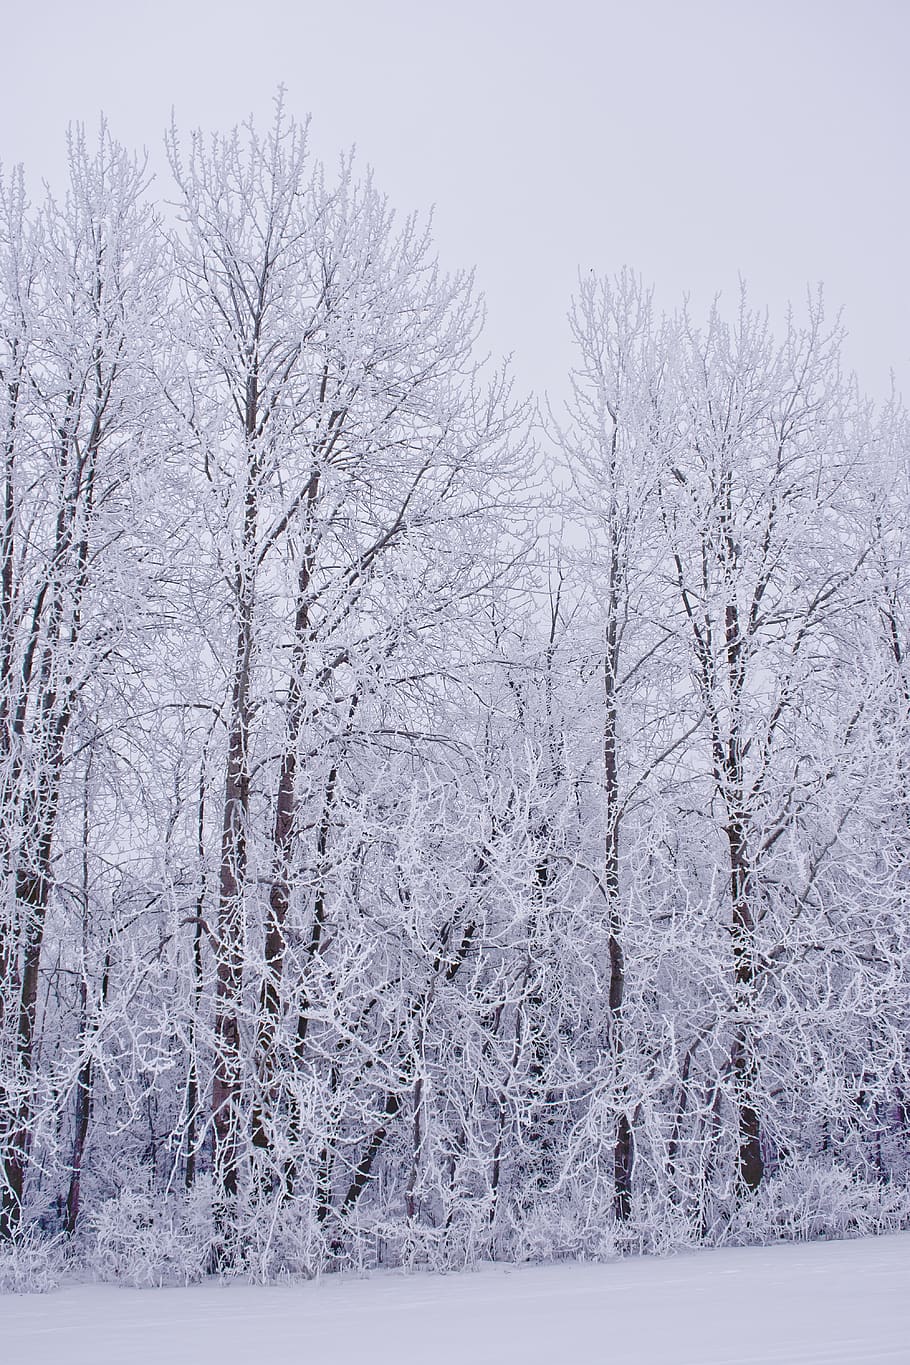 inverno, geada, frio, árvores, bosques, neve, natureza, paisagem, invernal, branco